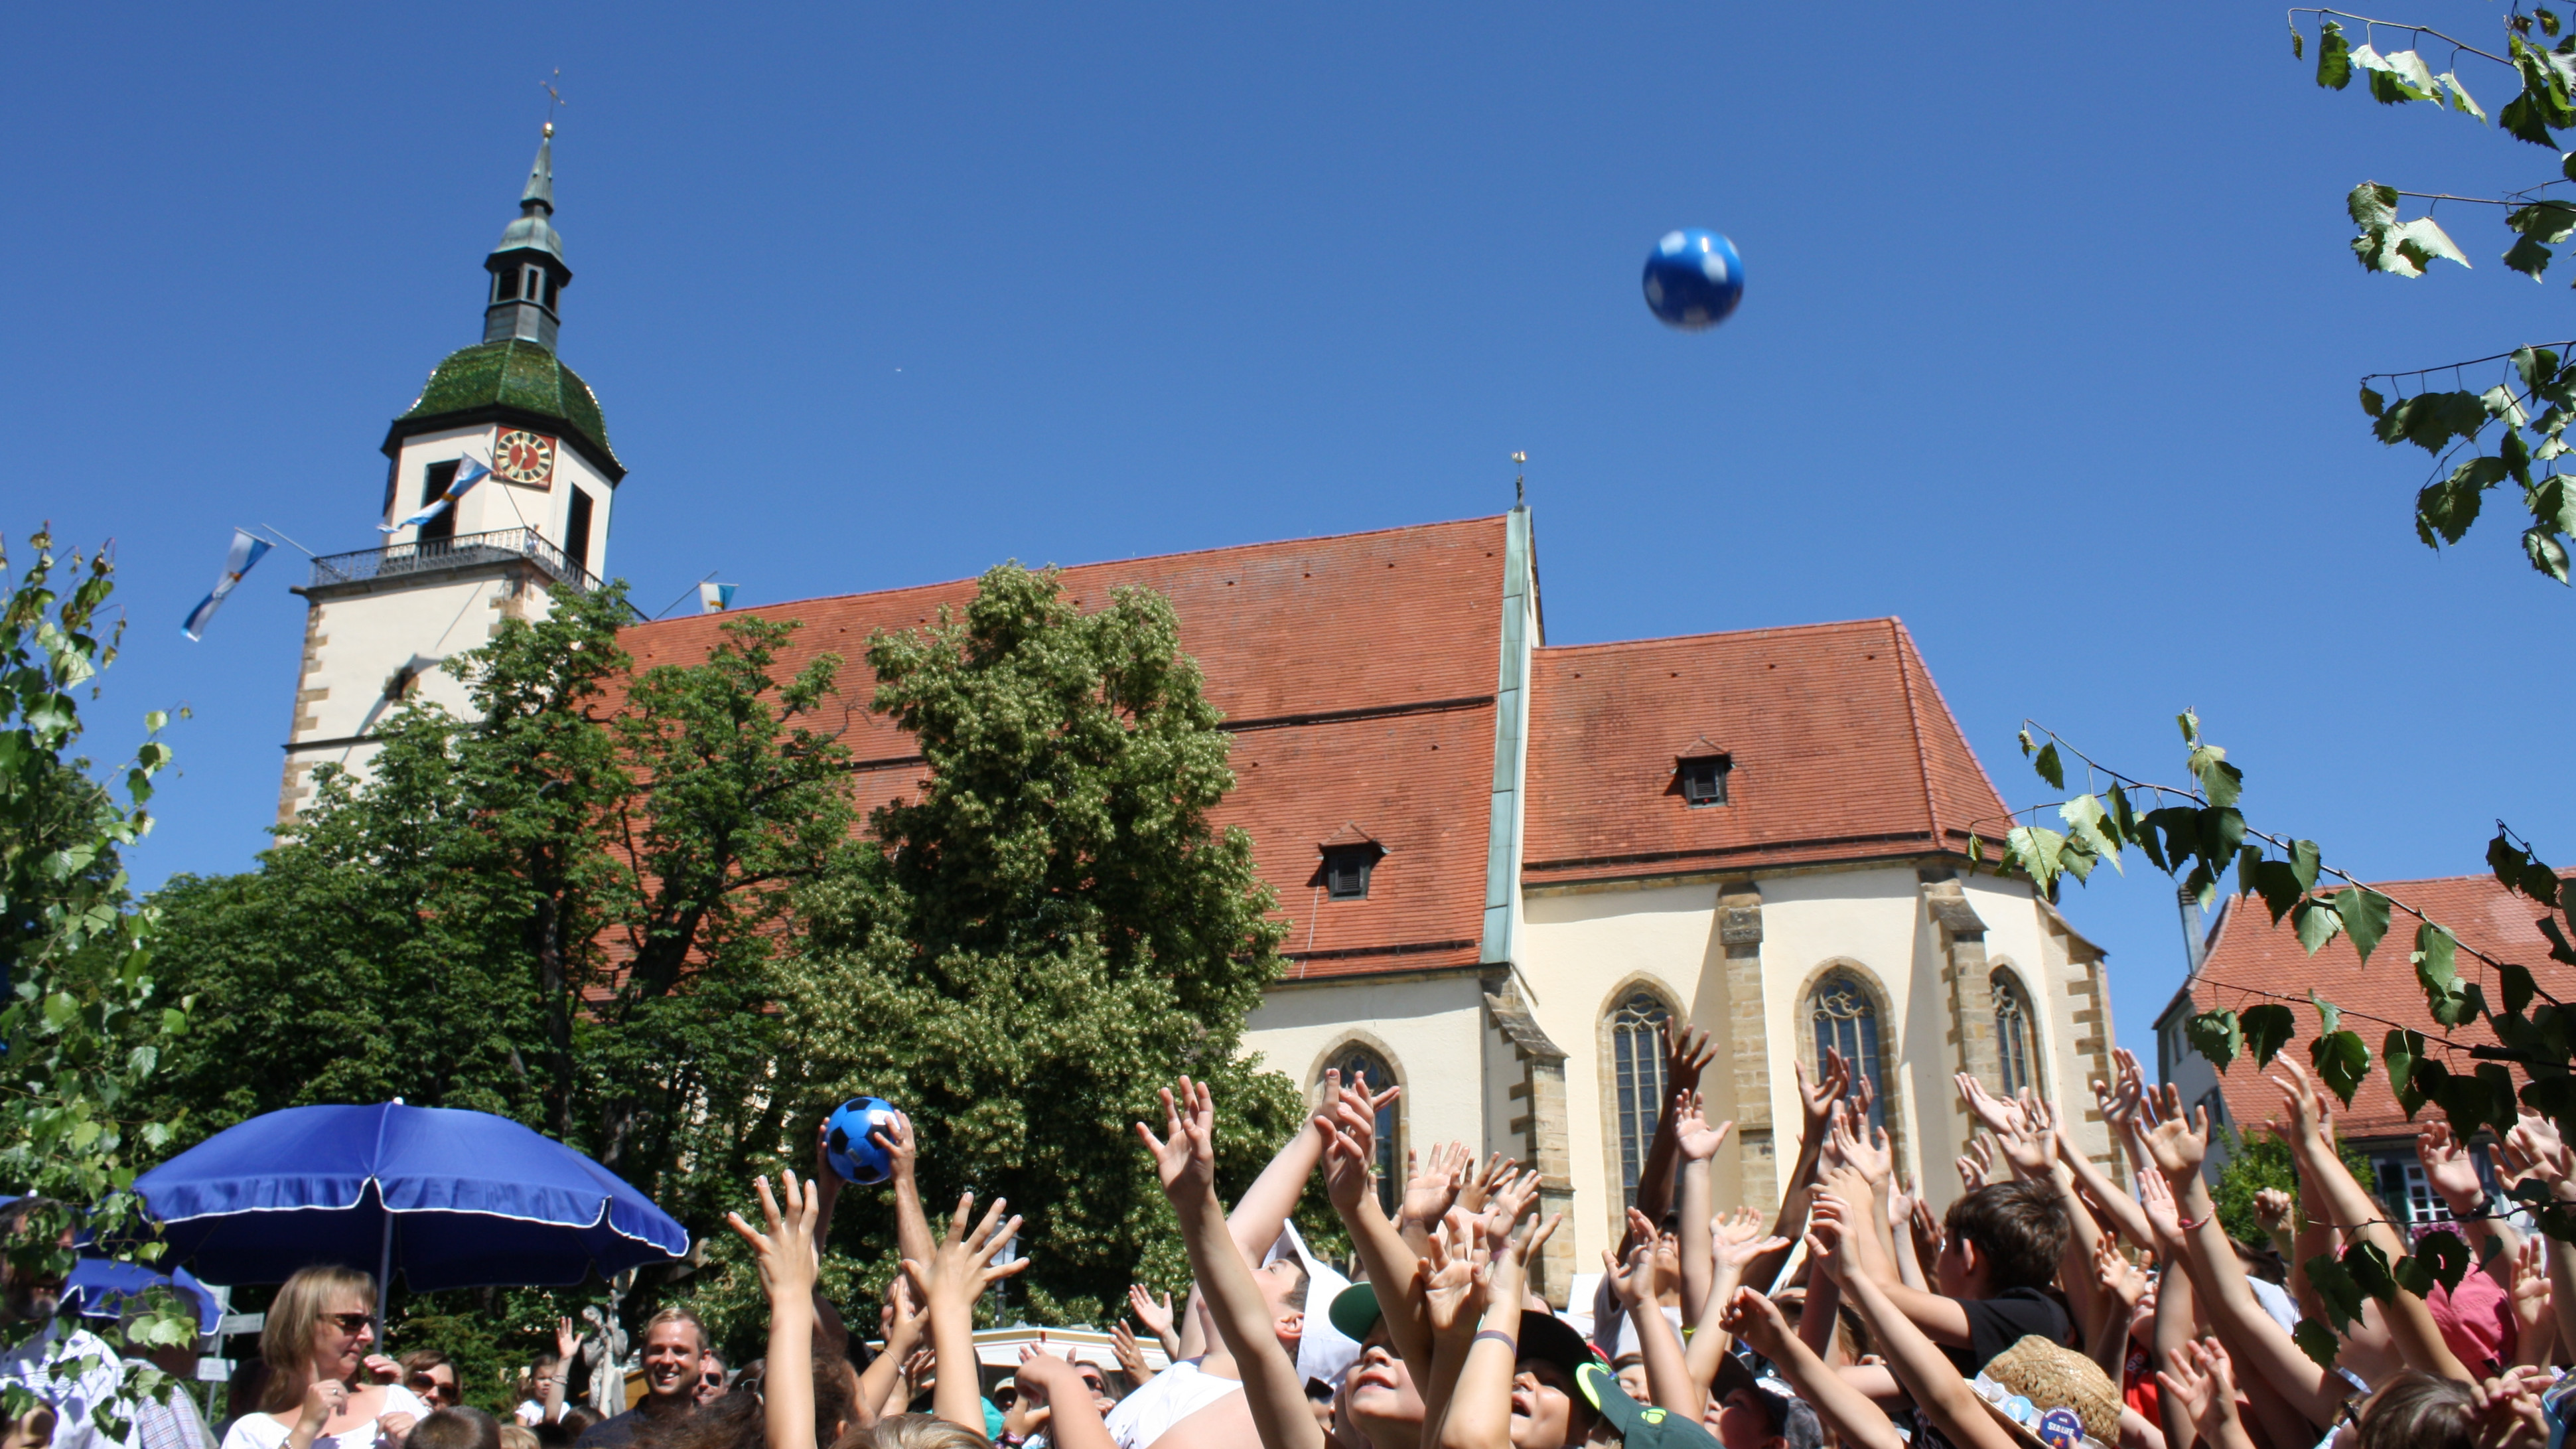  zu sehen ist das Ballwerfen beim Städtlesfest Weilheim 